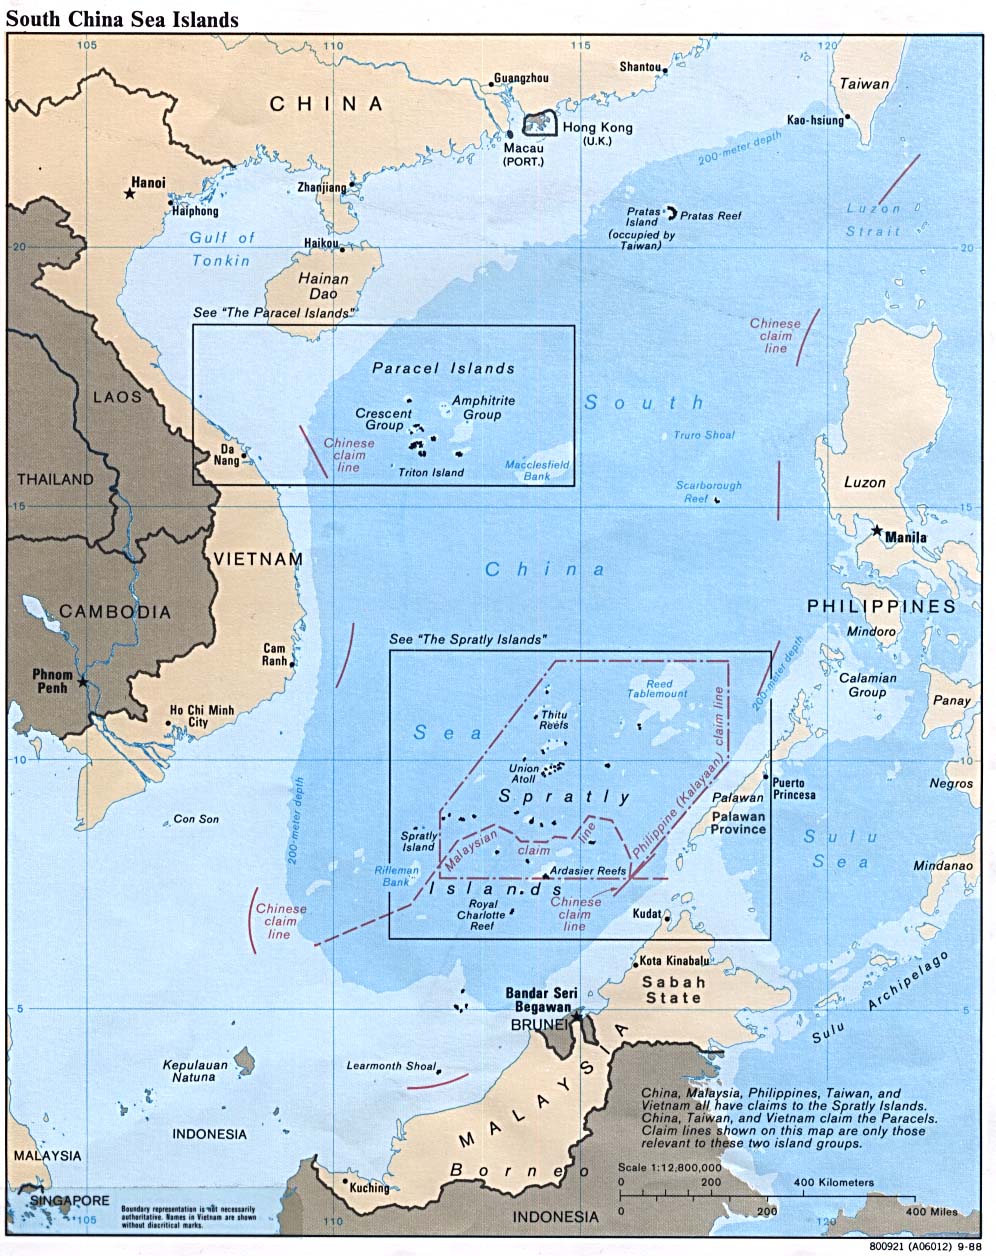 Mapa Politico de las Islas del Mar de la China Meridional